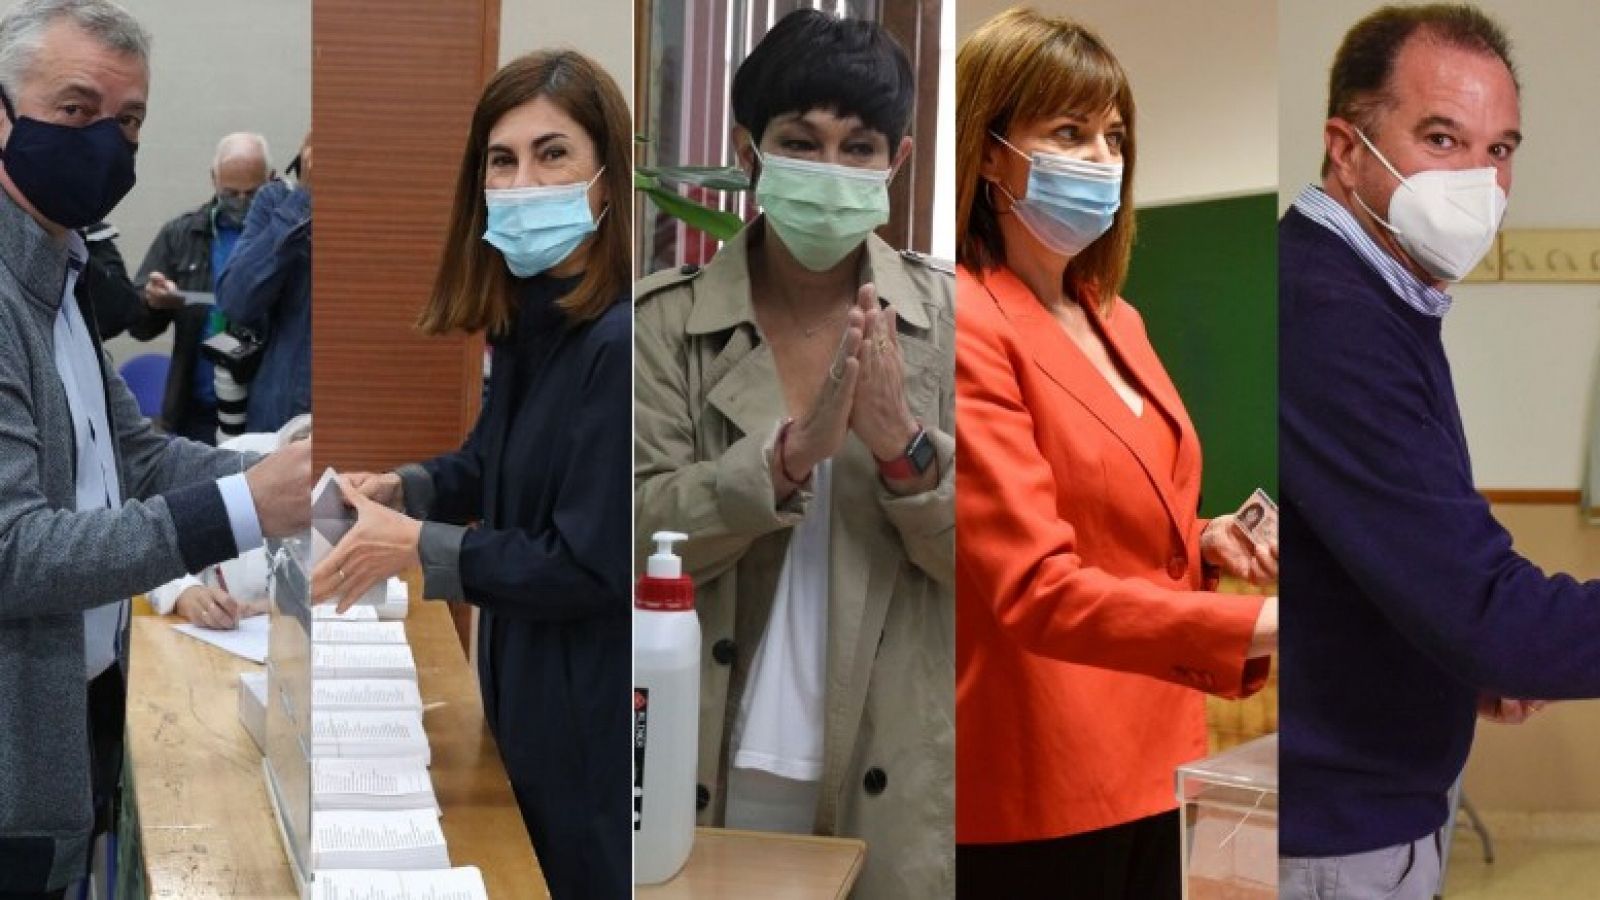 Elecciones vascas 2020| Los candidatos vascos votan y animan a participar: "Votar es seguro"